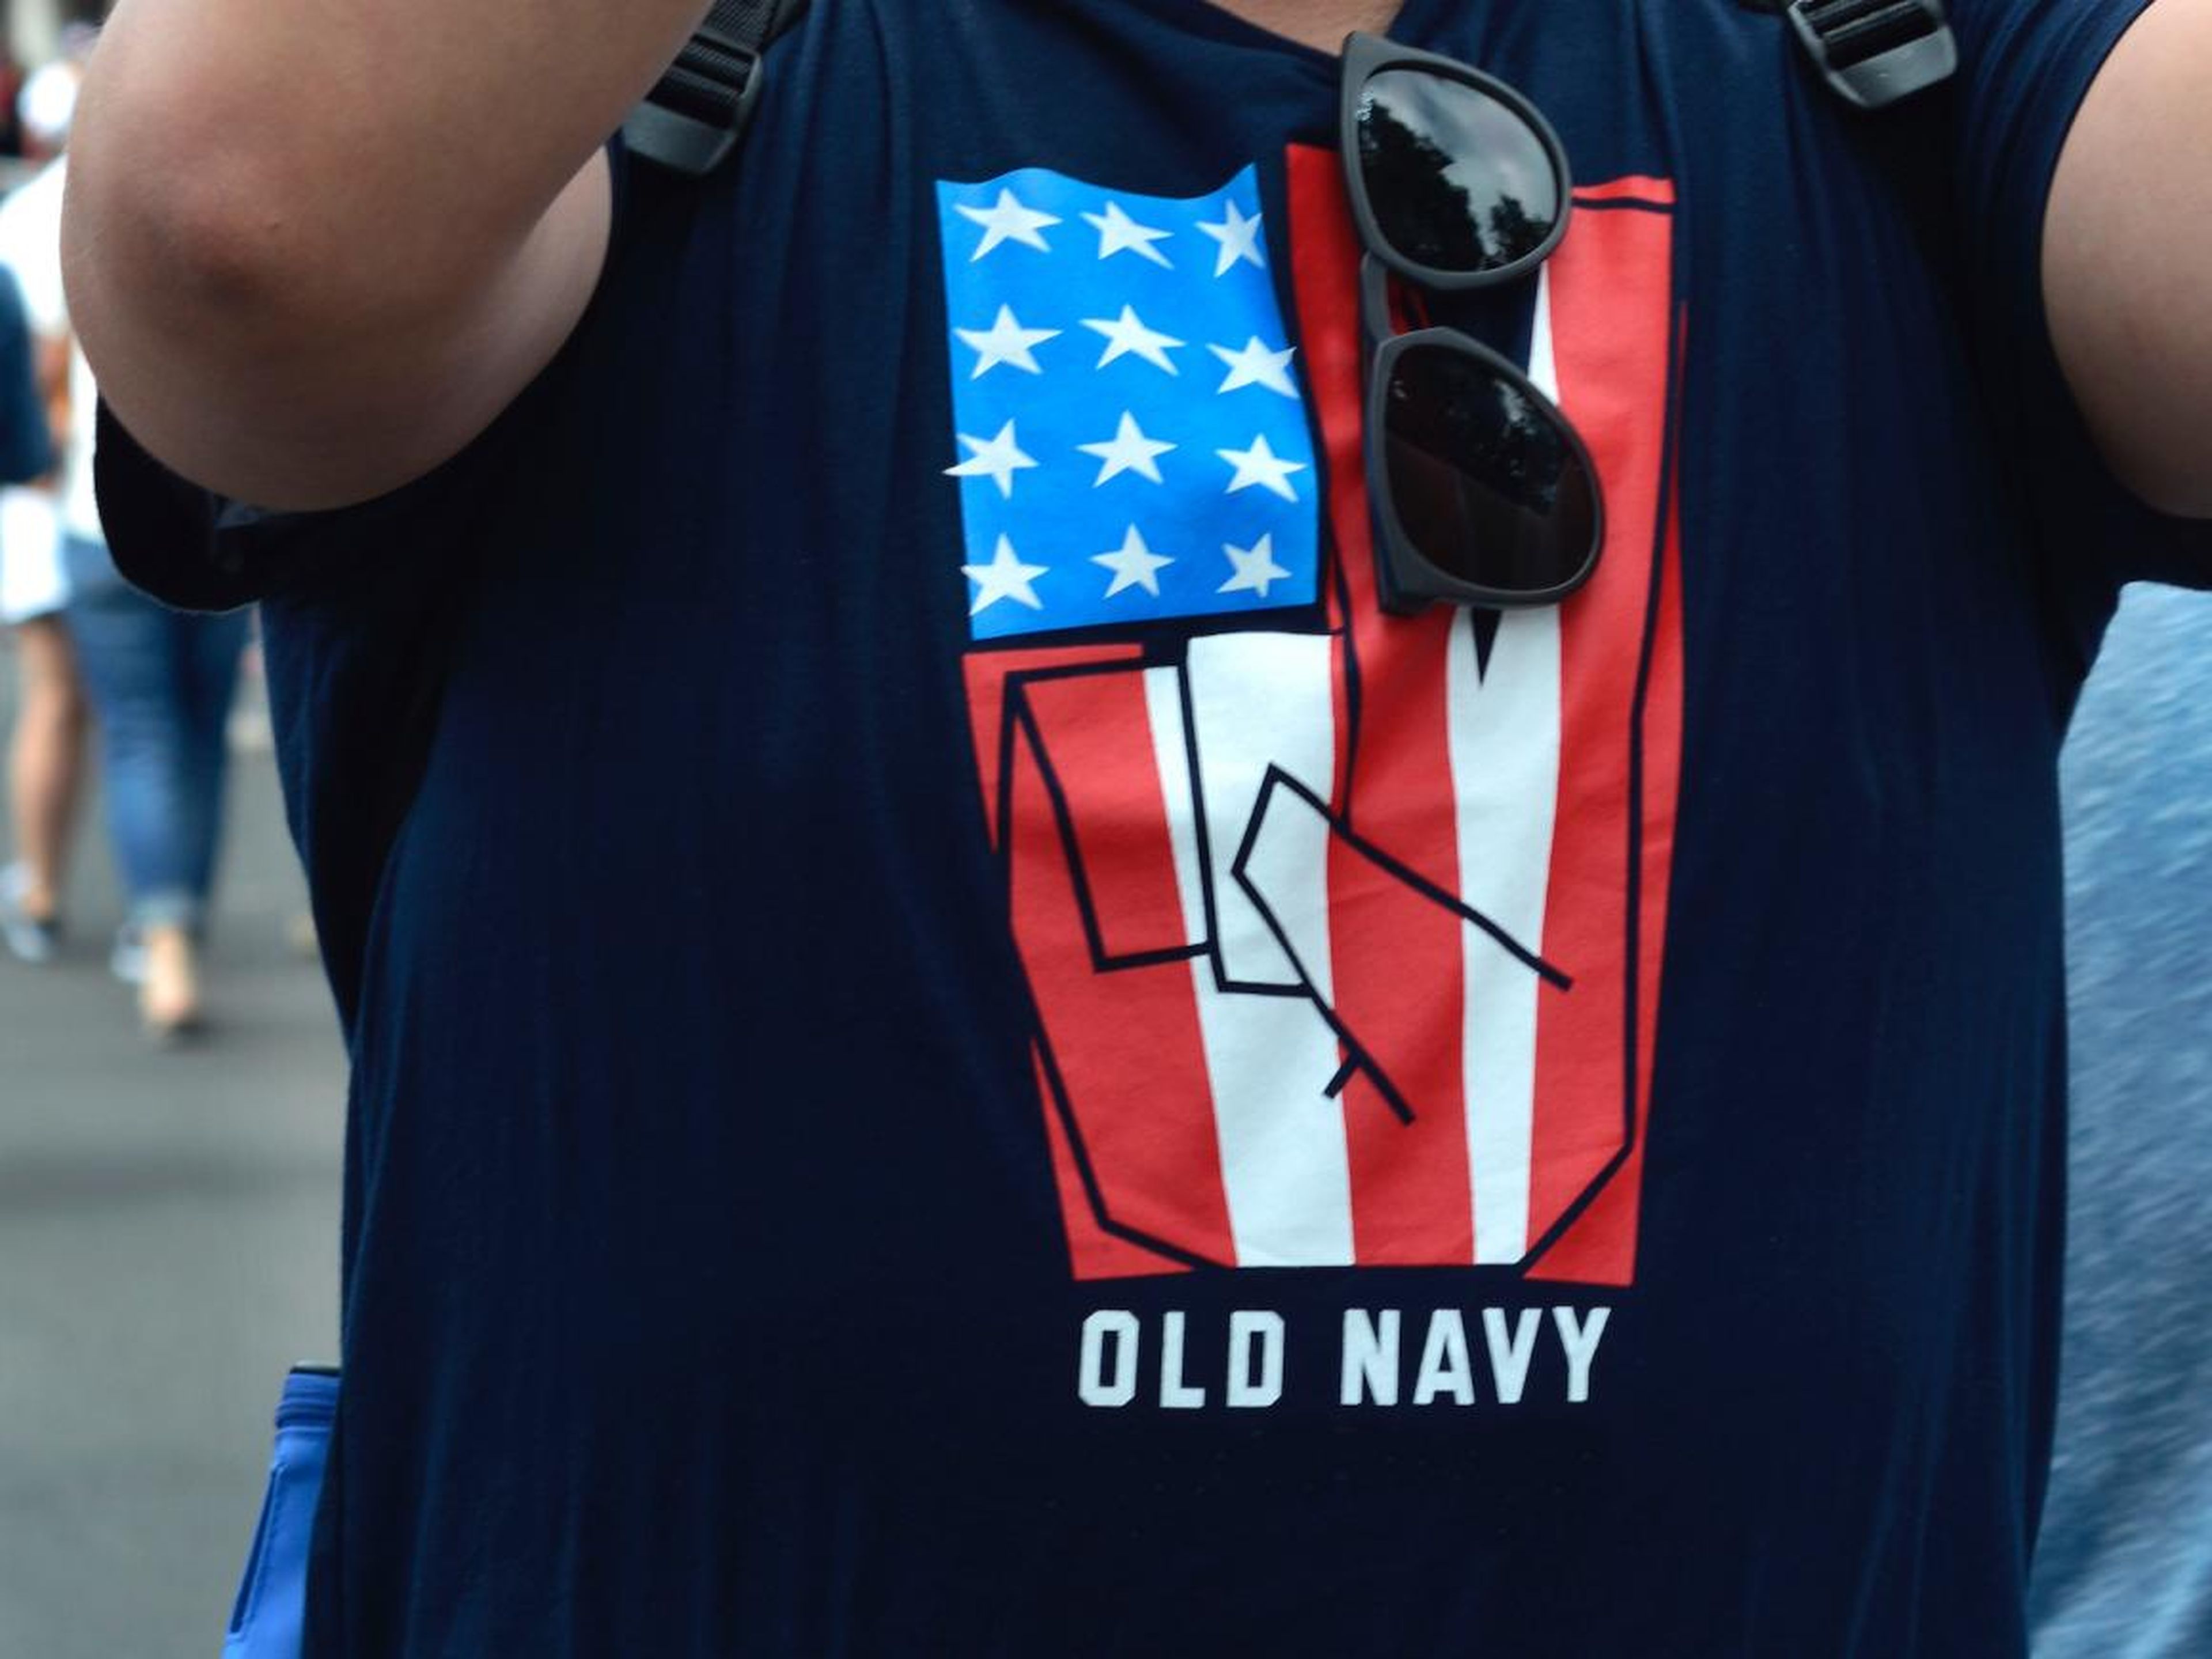 Old Navy se convirtió, rápidamente, en una de las marcas preferidas para un amplio sector de la sociedad. Sus diseños divertidos y sus looks pensados para celebrar el 4 de julio cautivaron a muchos.